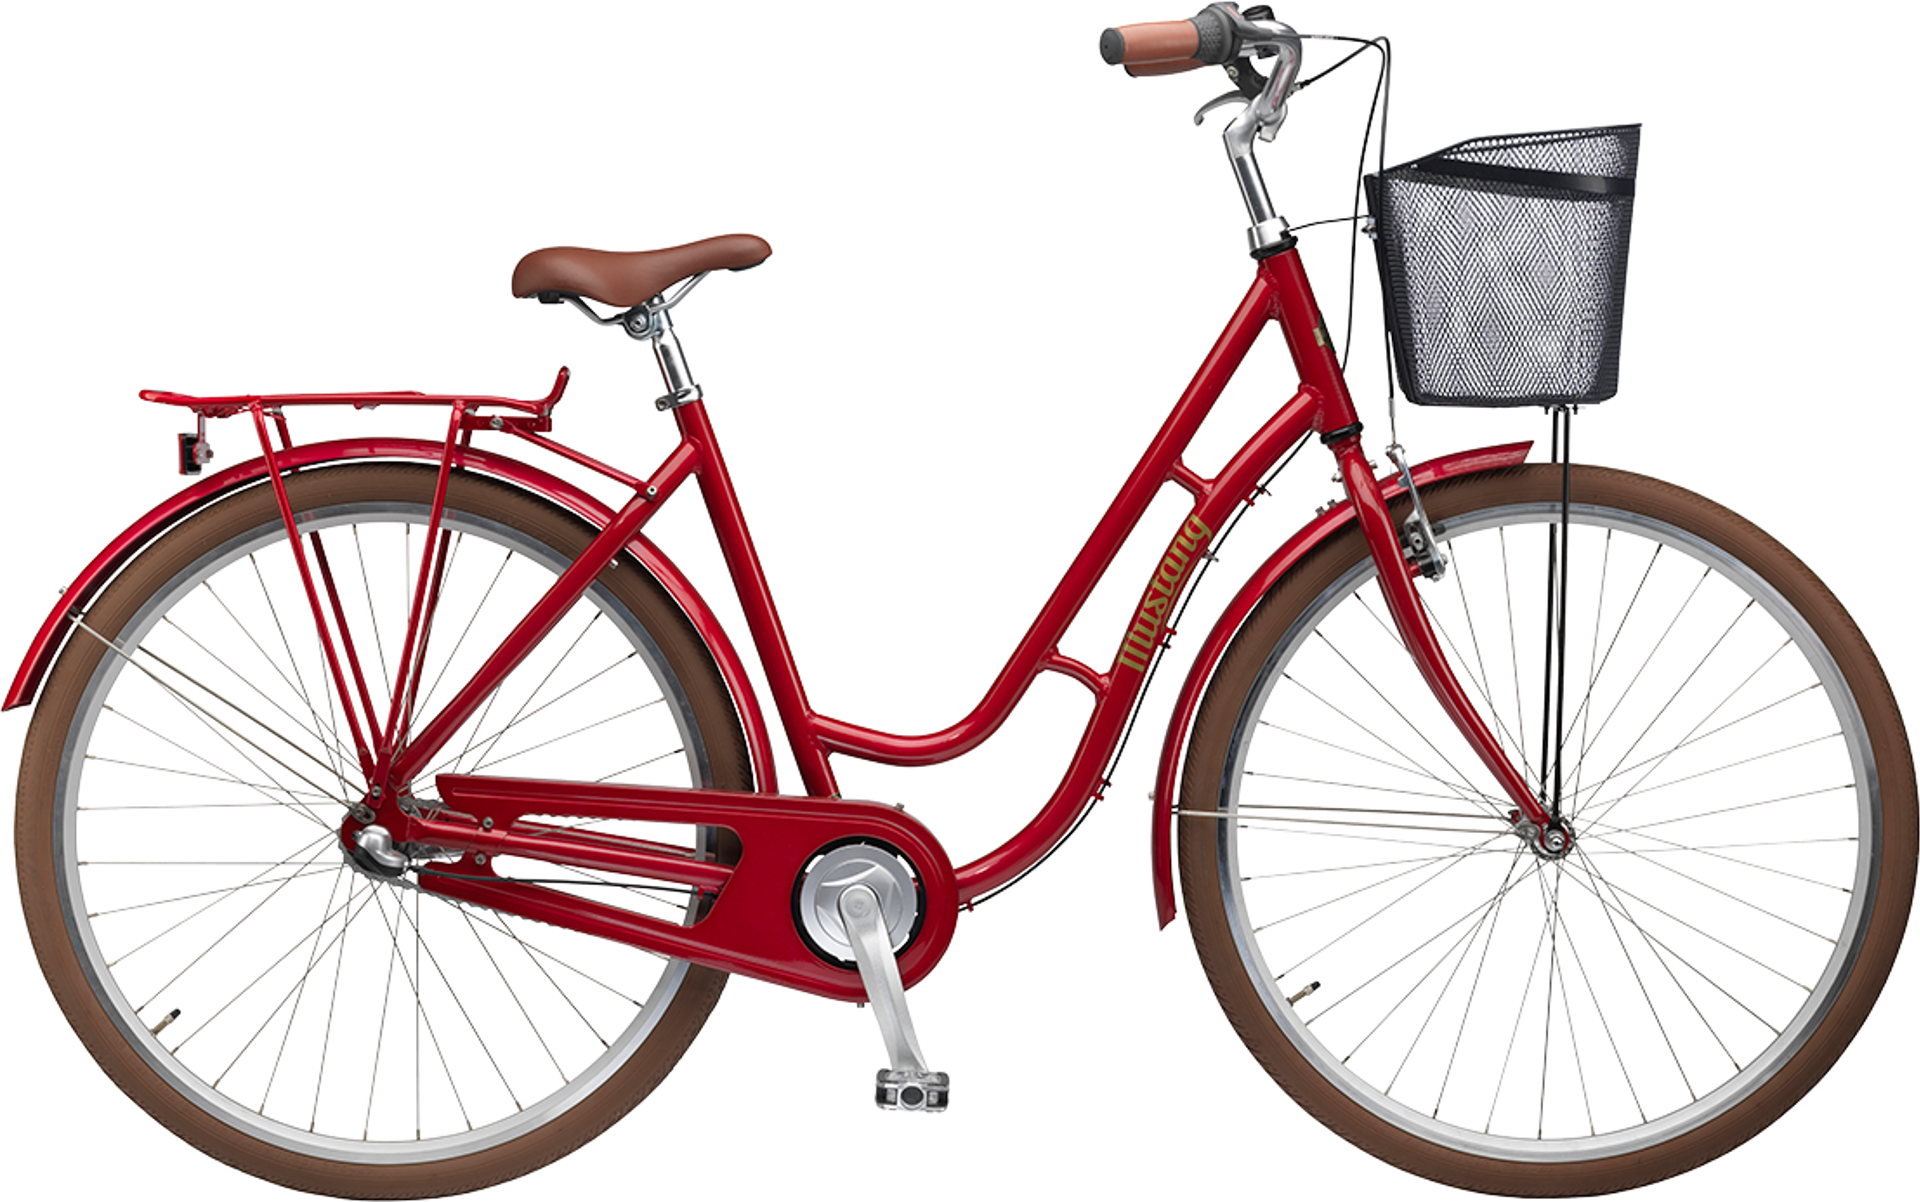 Whitney Reproducere Wow Billige Cykler – Kvalitetscykler til hele familien – Se her